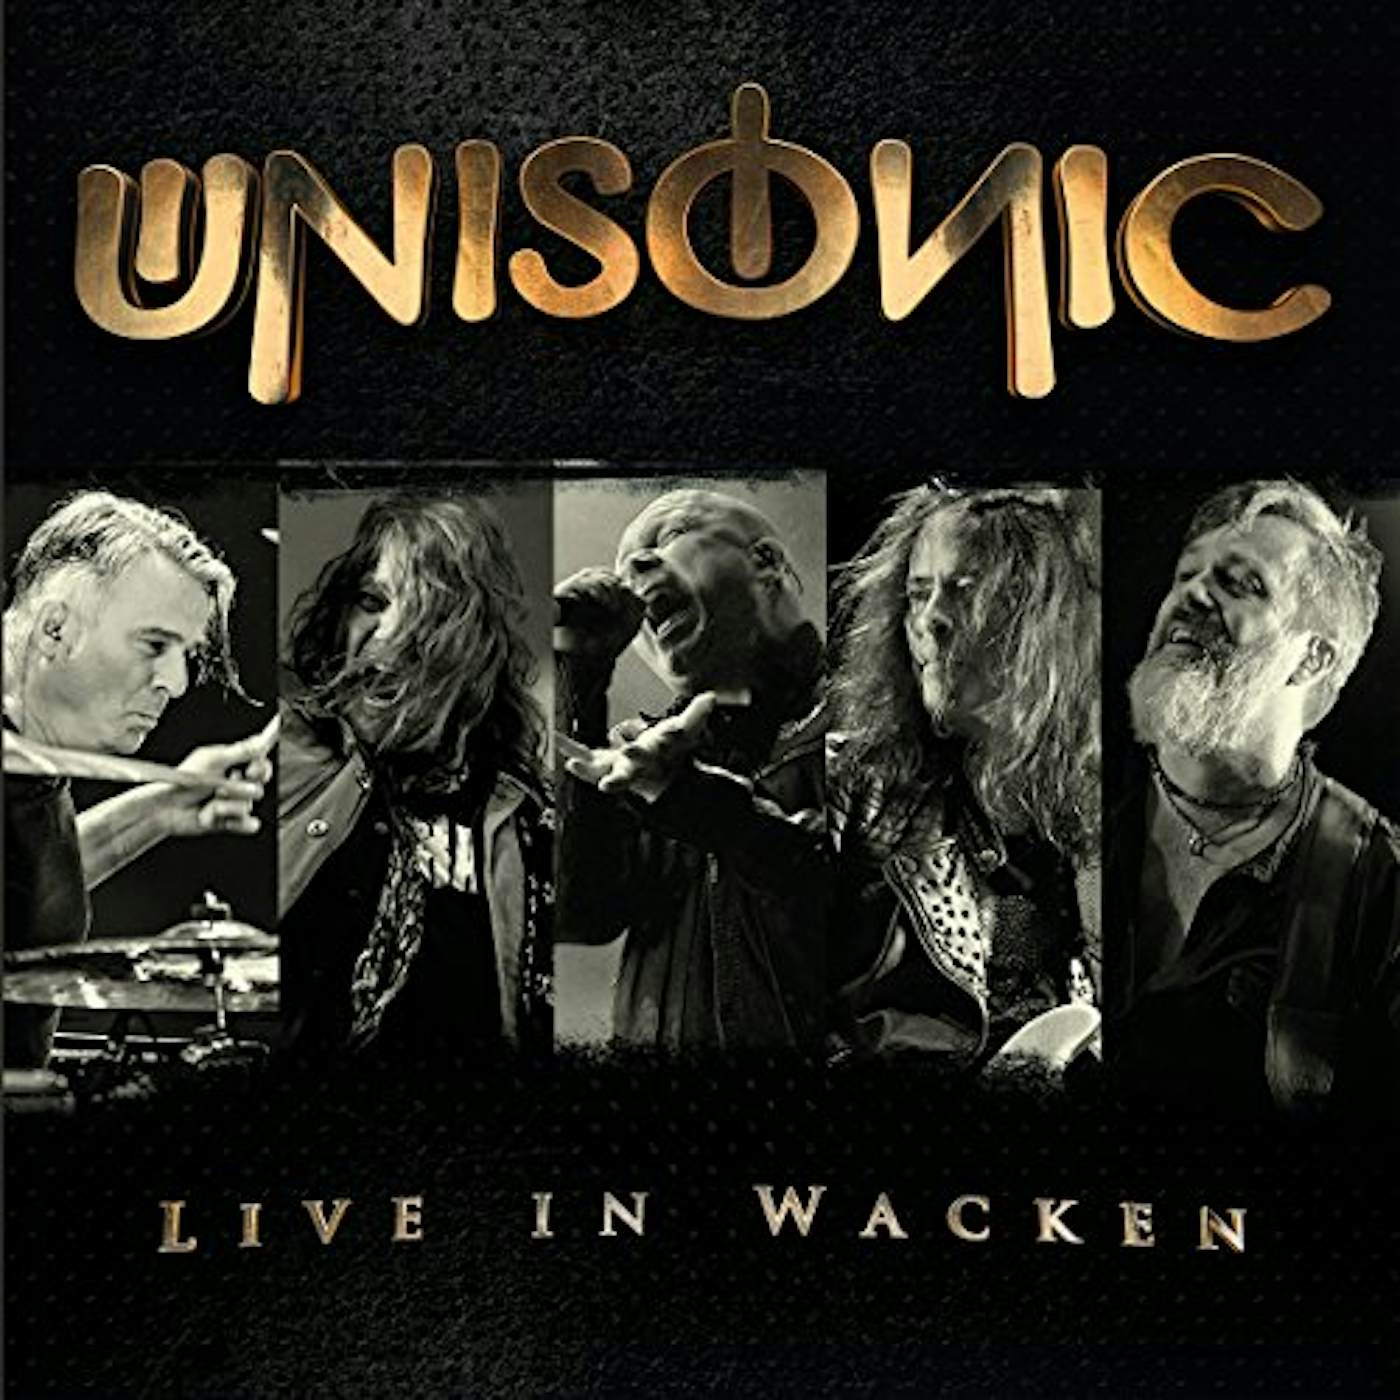 Unisonic LIVE IN WACKEN CD